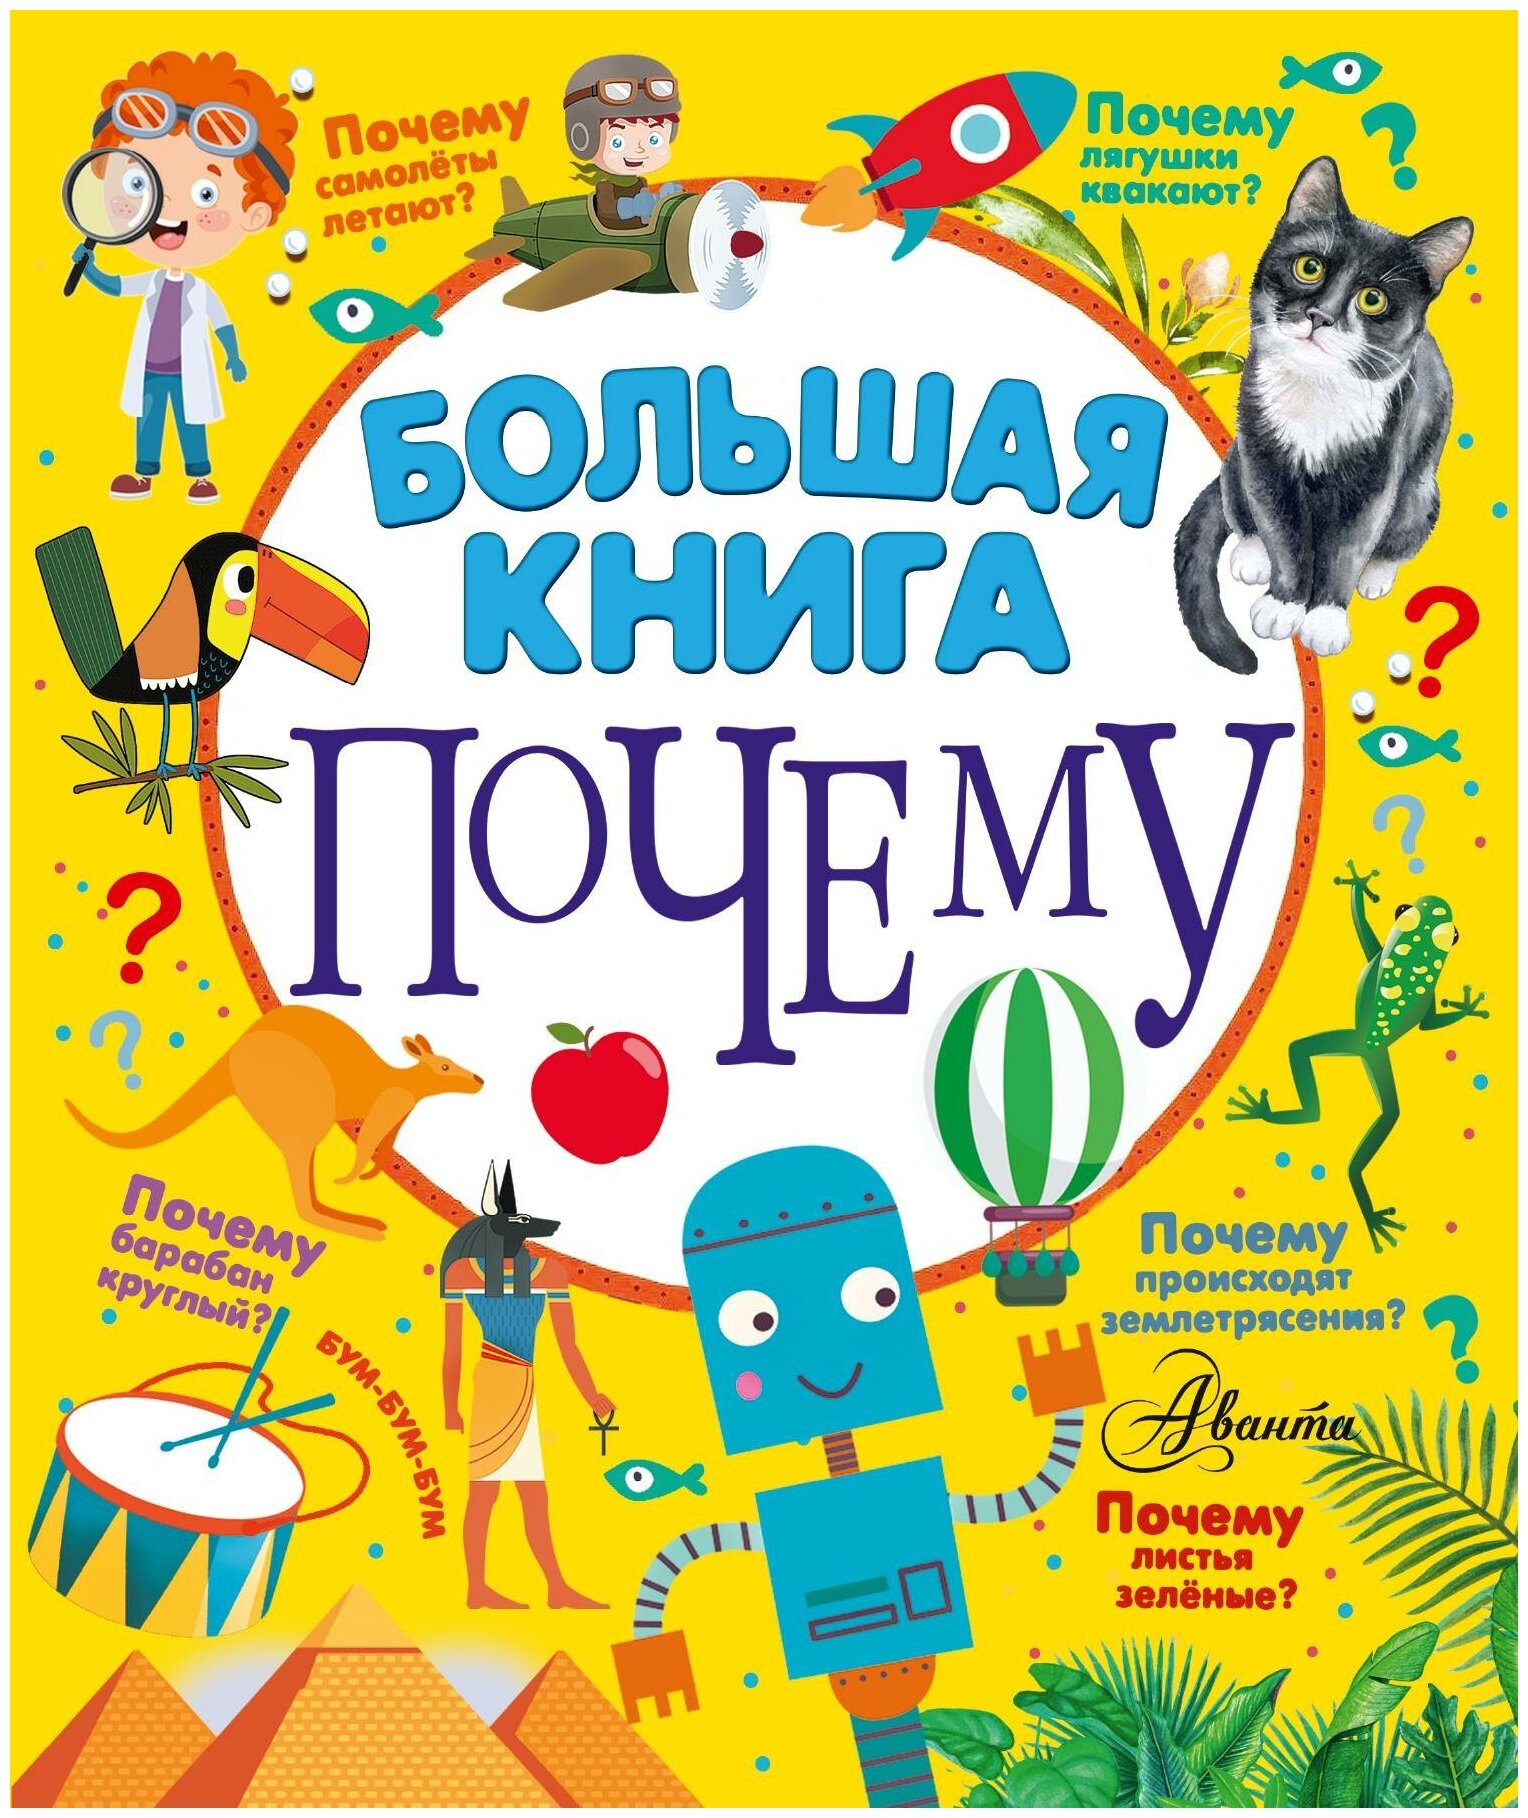 Бобков П. В, Косенкин А. А. Большая книга почему. 100 тысяч почему